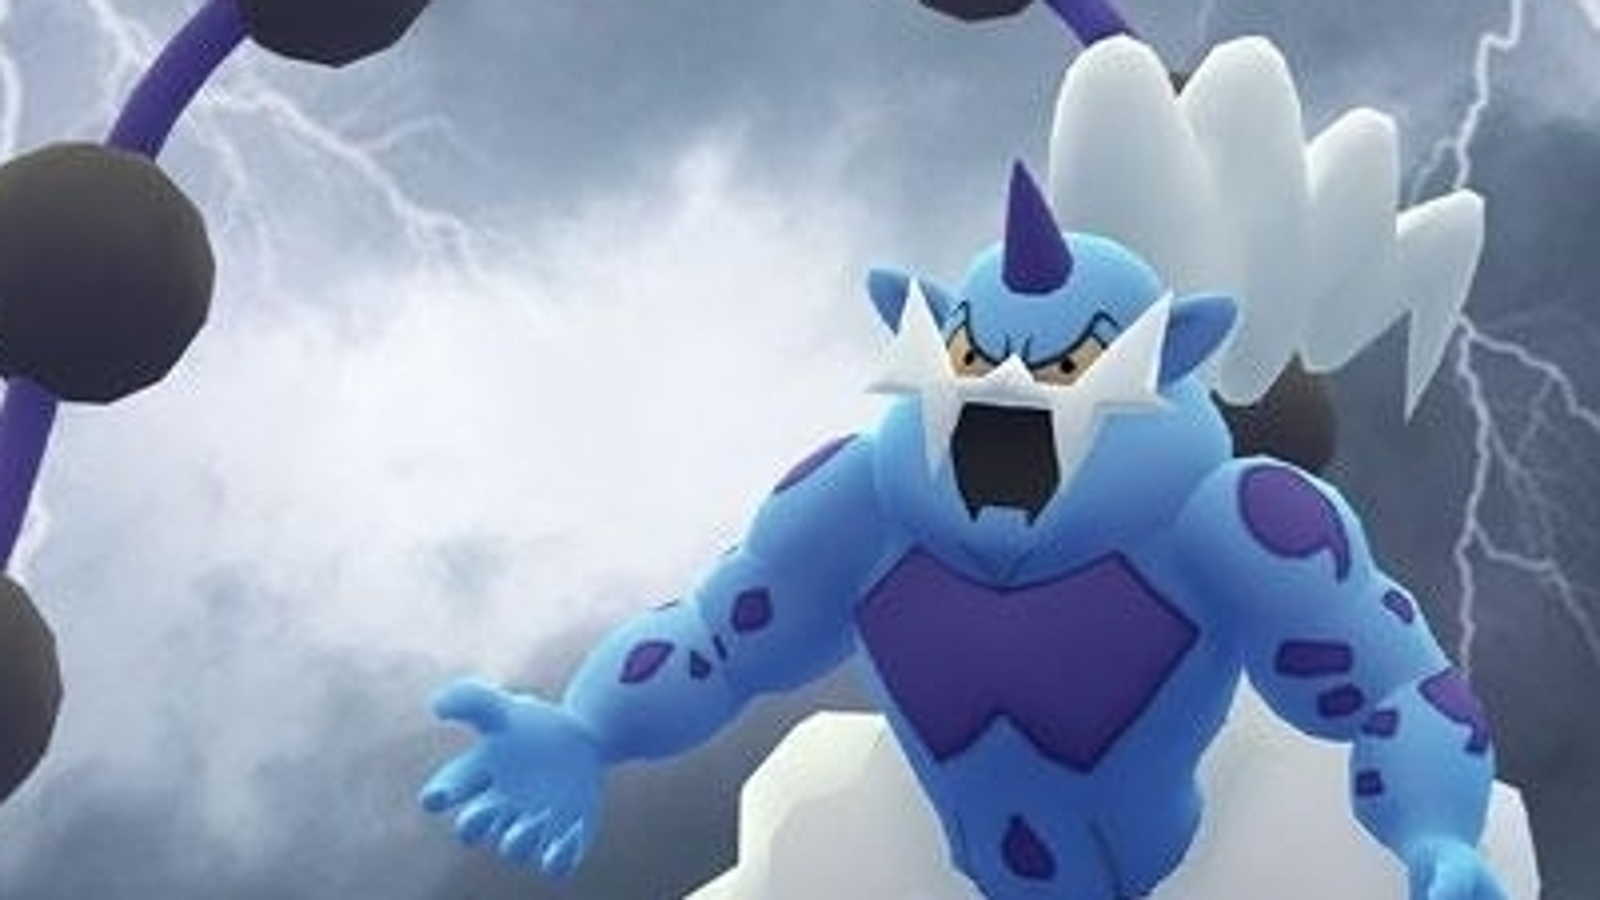 Thundurus Pokémon GO: Fraquezas, melhores counters e como derrotar nas  Reides - Millenium